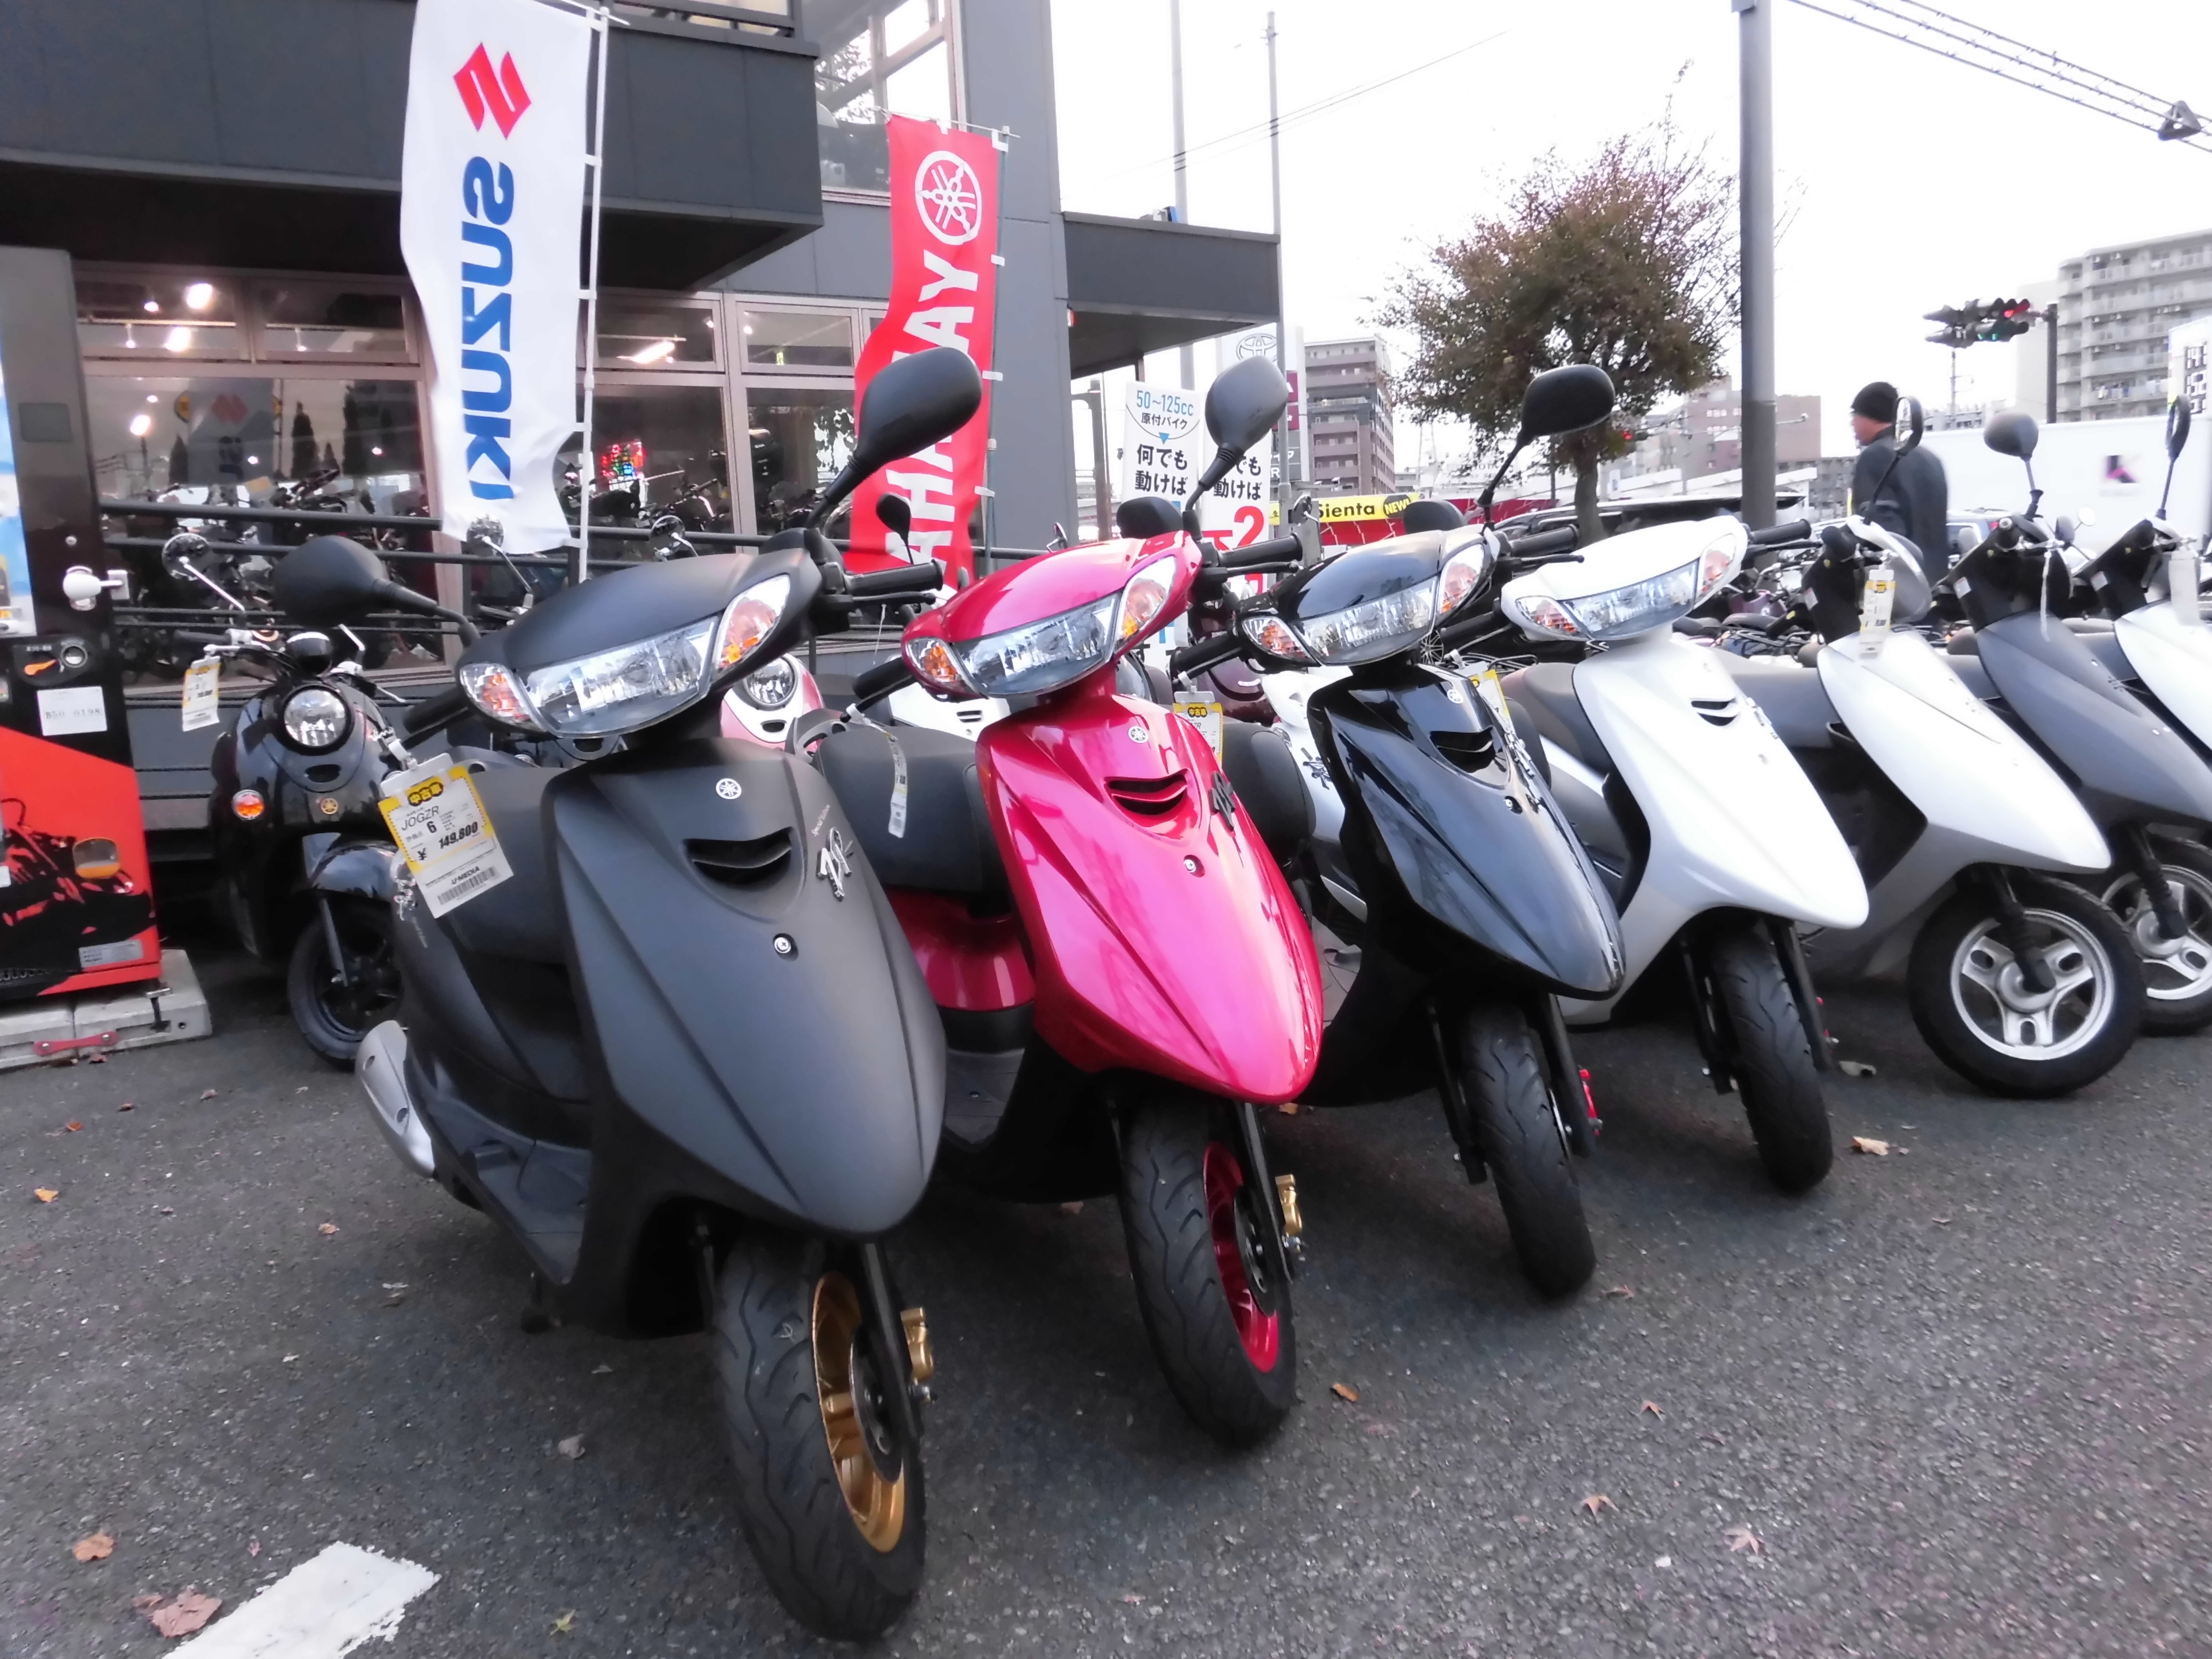 ジョグzr 最新情報 U Media ユーメディア 中古バイク 新車バイク探しの決定版 神奈川 東京でバイク 探すならユーメディア